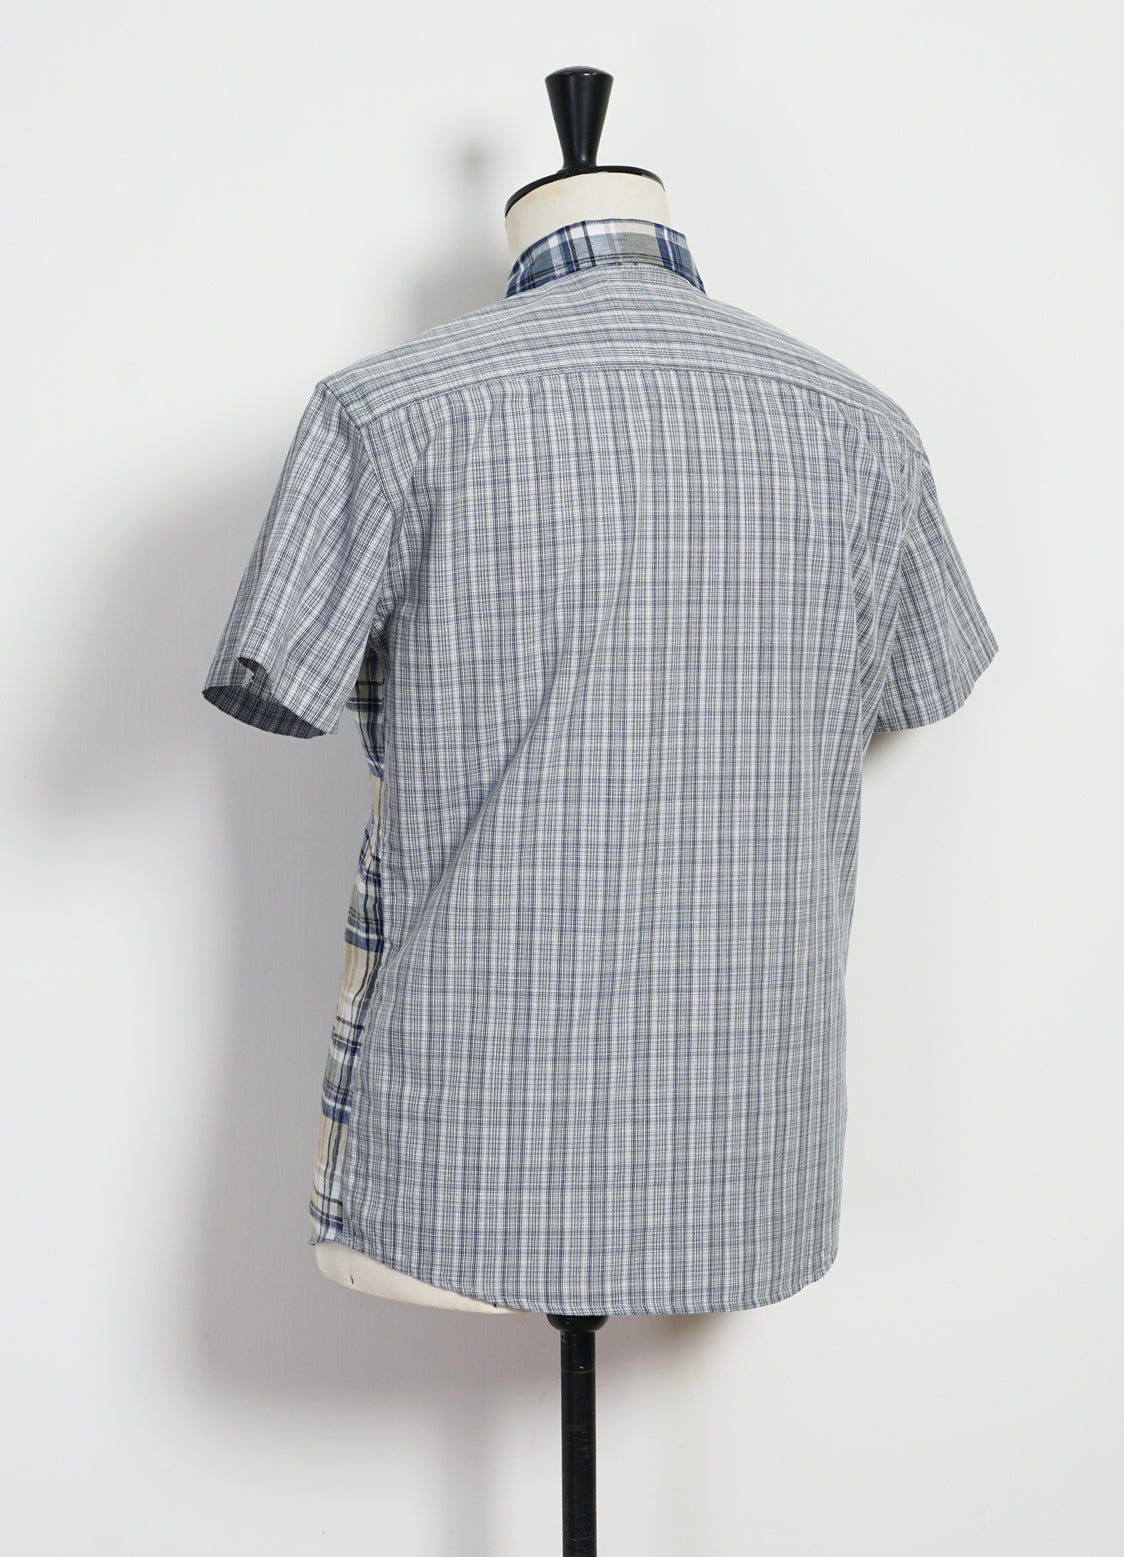 JONNY | Short Sleeve Shirt | Blue Checks